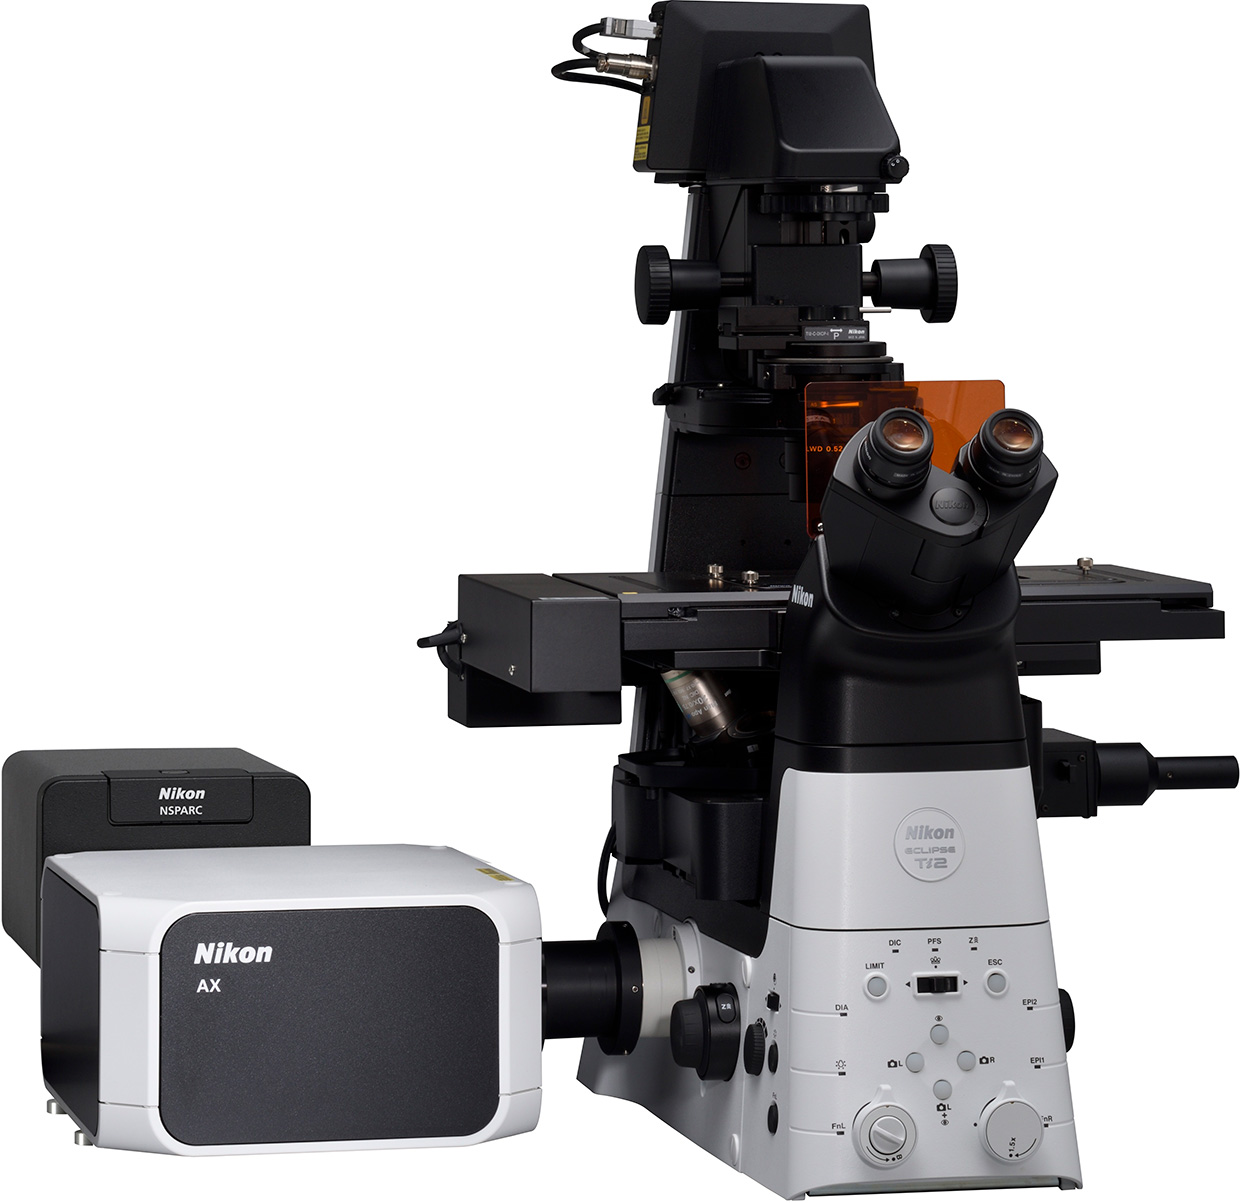 共焦点レーザー顕微鏡システム「AXシリーズ」を拡張、高解像で深部観察 